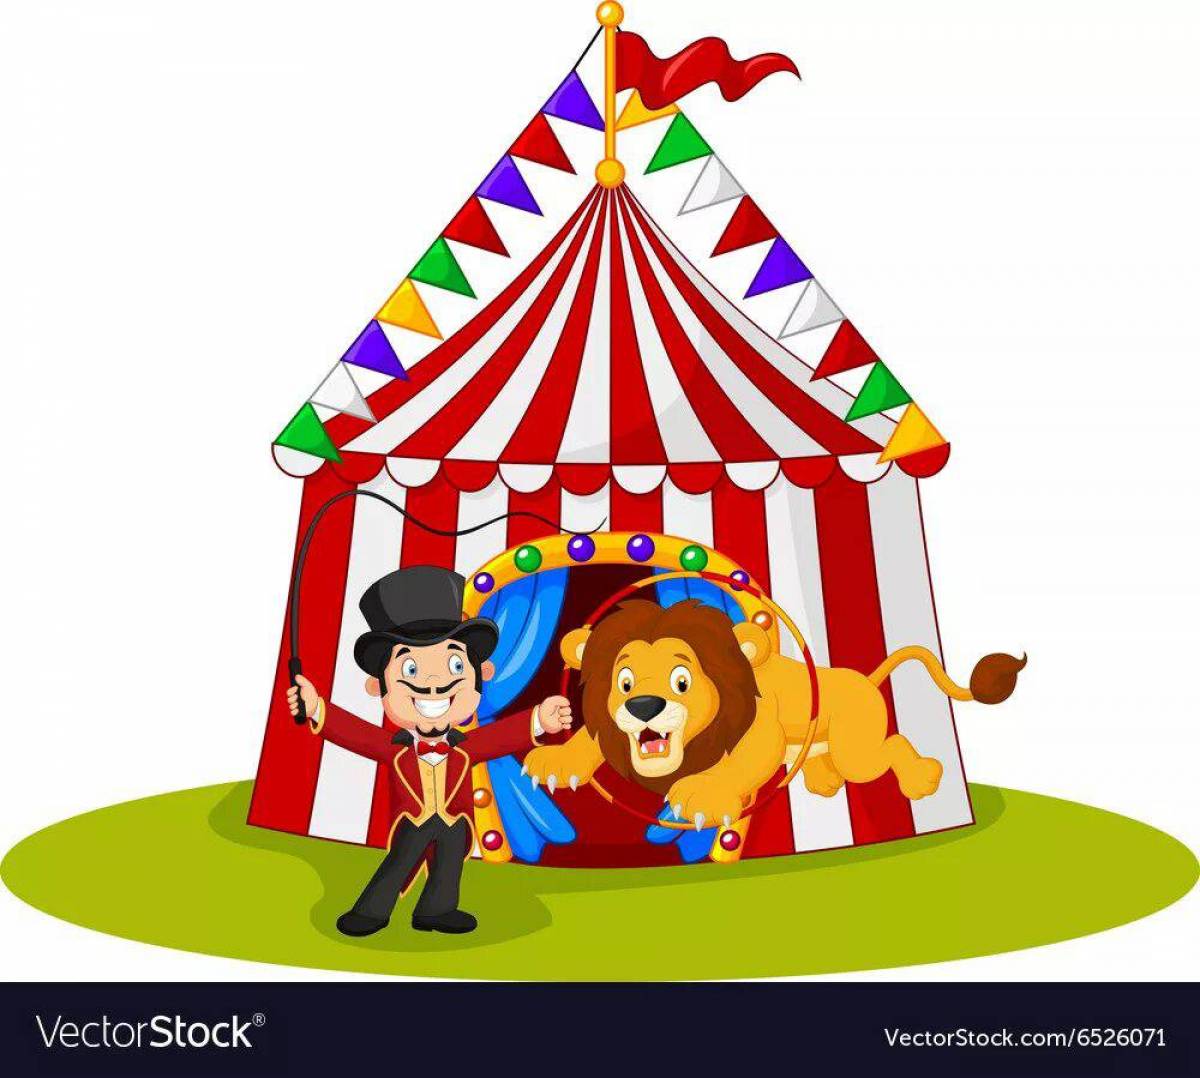 Цирк для детей #34